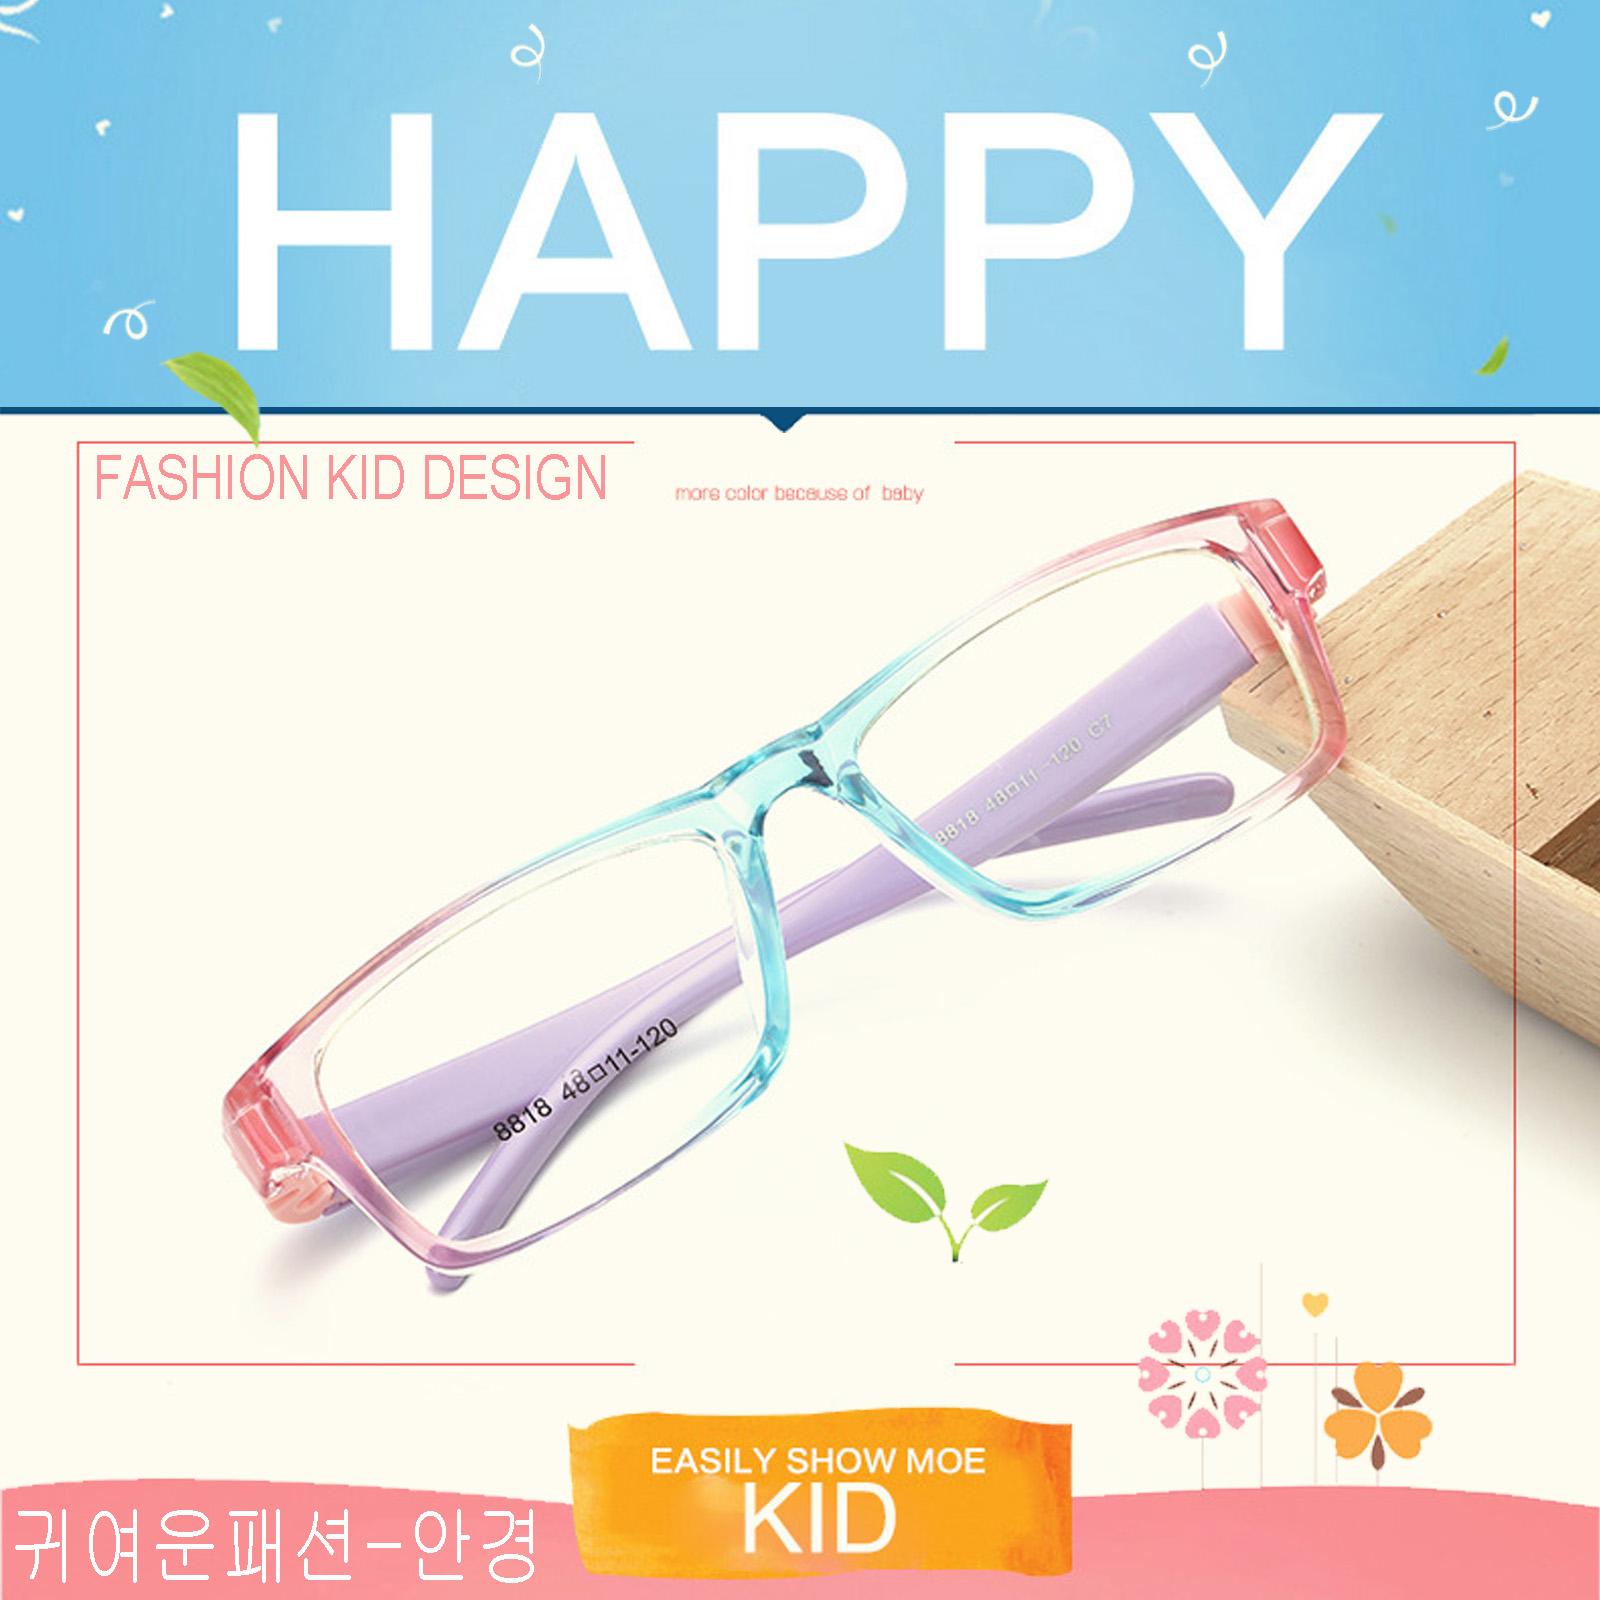 แว่นตาเกาหลีเด็ก Fashion Korea Children แว่นตาเด็ก รุ่น 8818 C-7 สีฟ้าตัดชมพูใสขาม่วง กรอบแว่นตาเด็ก Rectangle ทรงสี่เหลี่ยมผืนผ้า Eyeglass baby frame ( สำหรับตัดเลนส์ ) วัสดุ PC เบา ขาข้อต่อ Kid leg joints Plastic Grade A material Eyewear Top Glasses